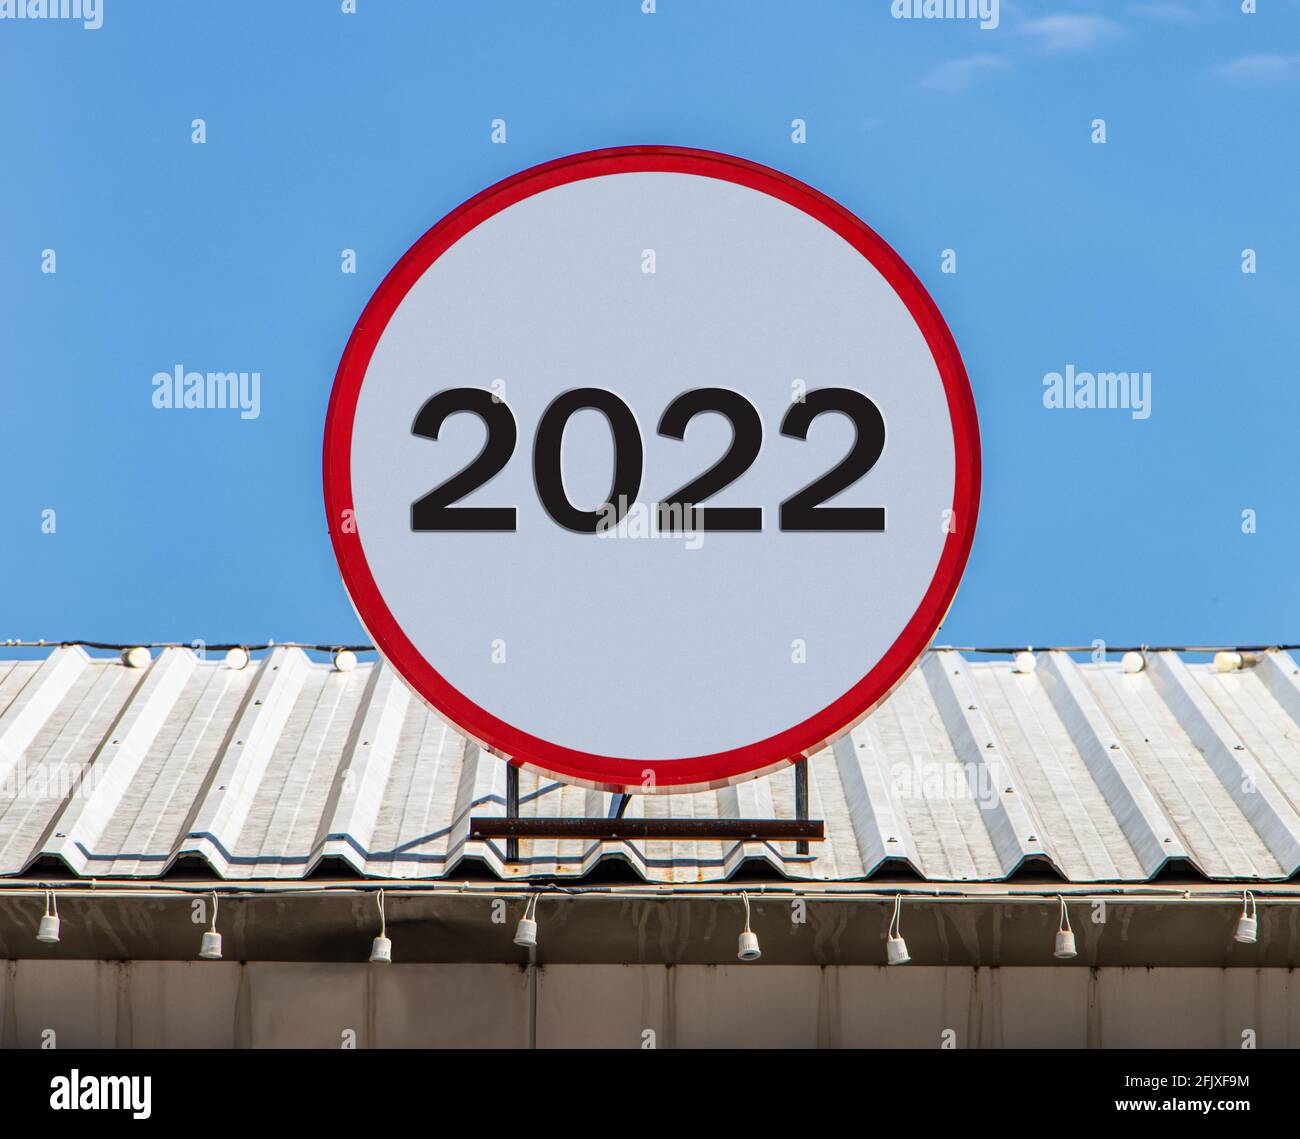 Auf einem Dach ist eine Circle Plakatwand mit der Nummer 2022 angebracht. Gruß zum neuen Jahr 2022. Stockfoto